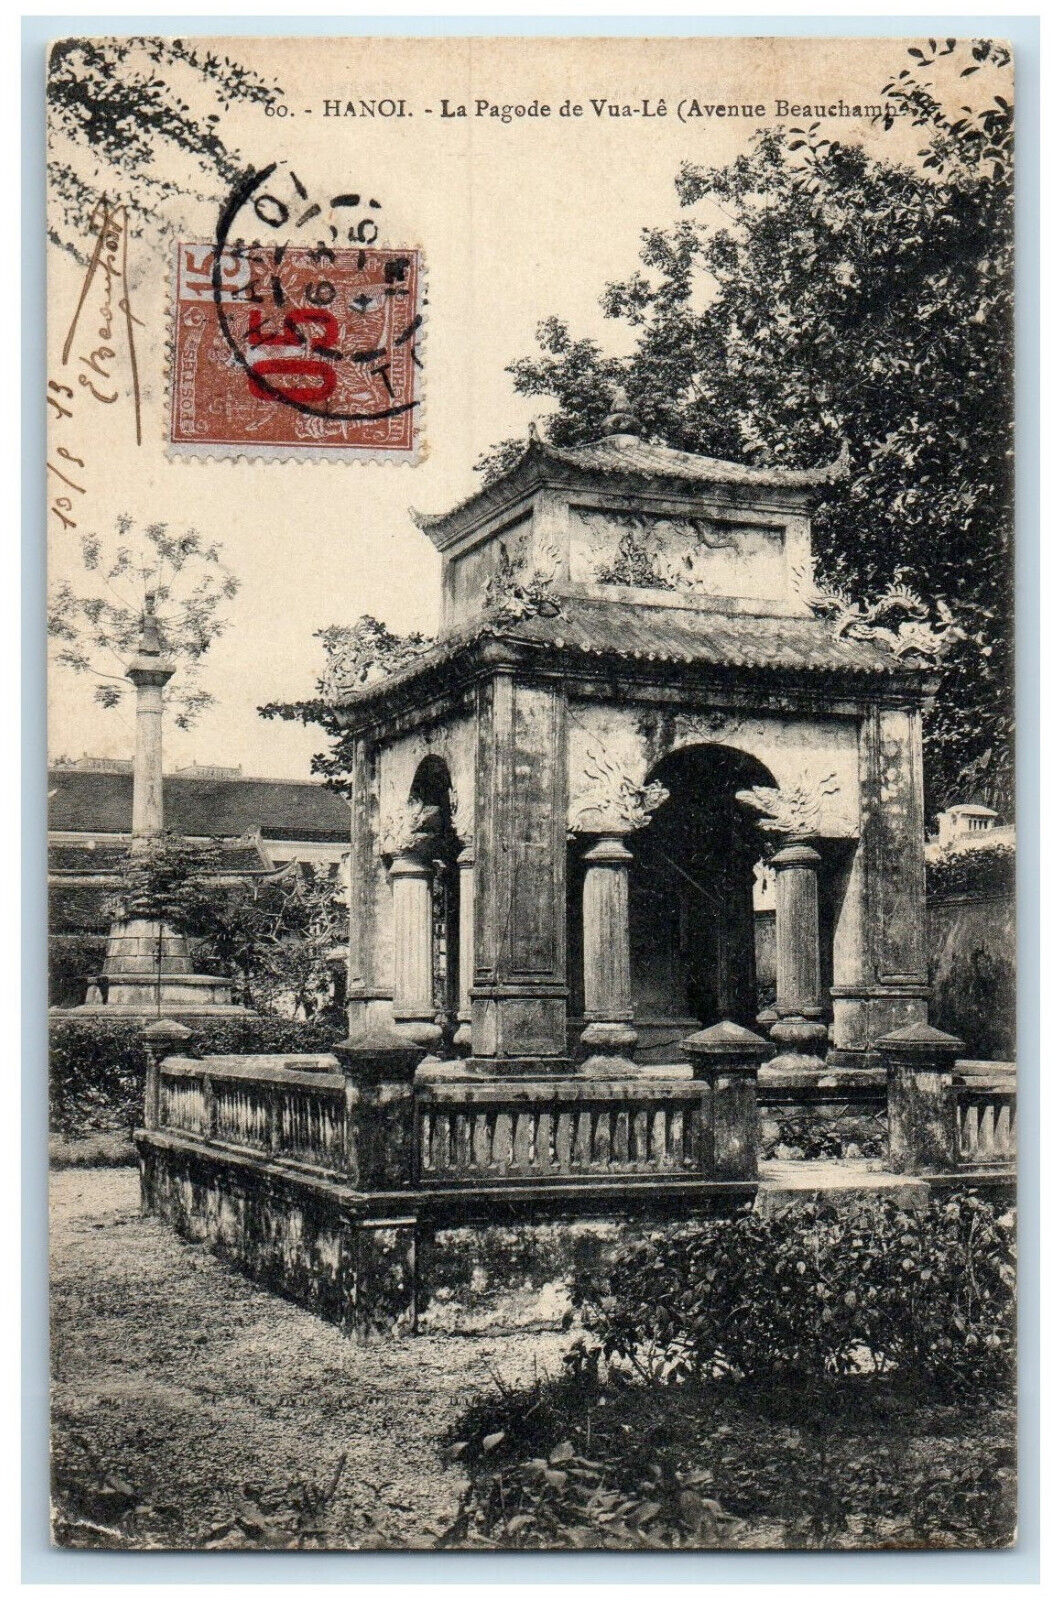 c1910 La Pagode De Vua-Le (Avenue Beauchamp) Hanoi Vietnam Postcard